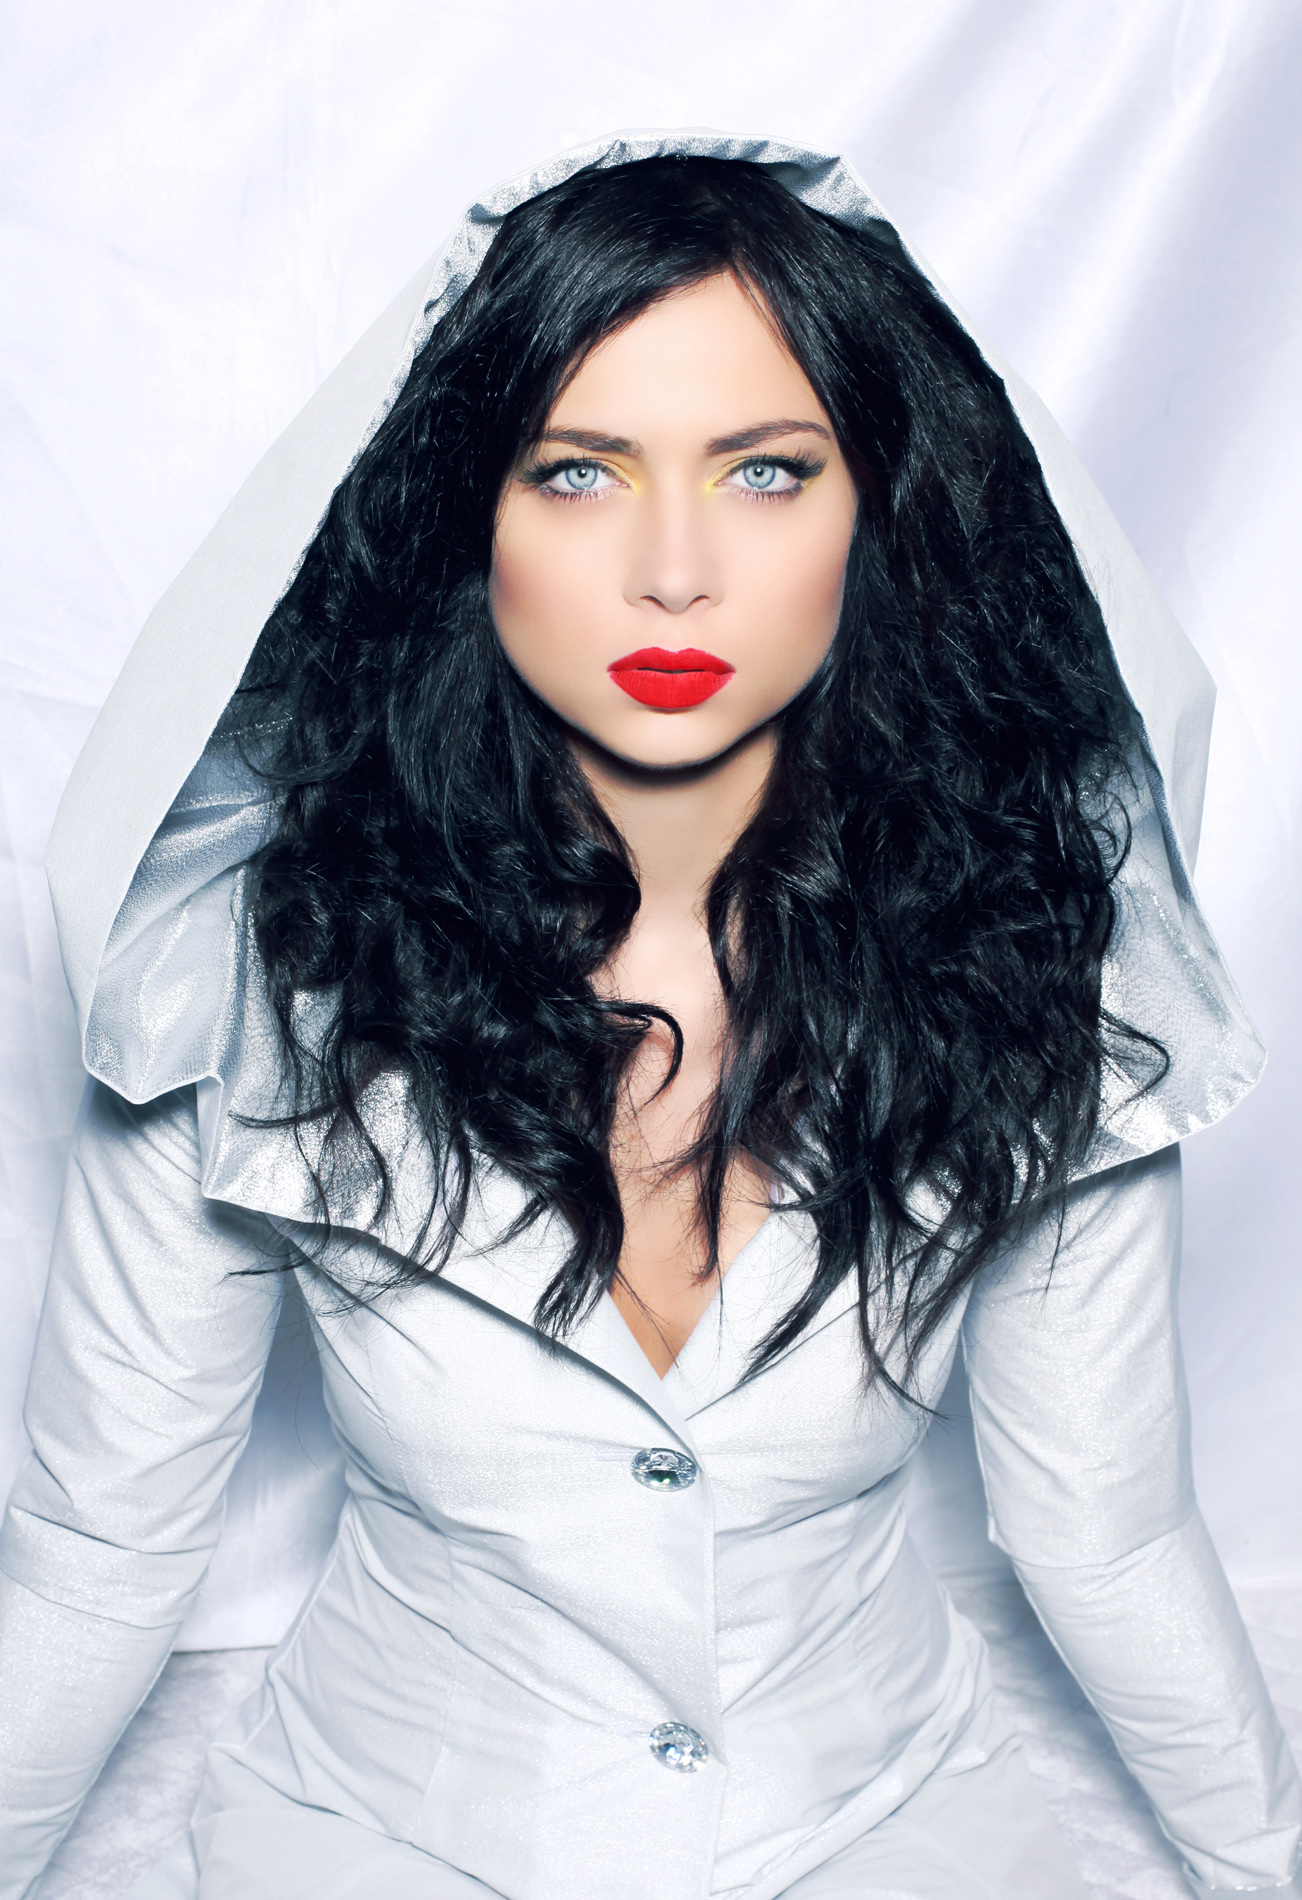 Nastasya Samburskaya Women Russian Actress Singer Red Lipstick Long Hair Blue Eyes Dark Hair Frontal 1302x1900